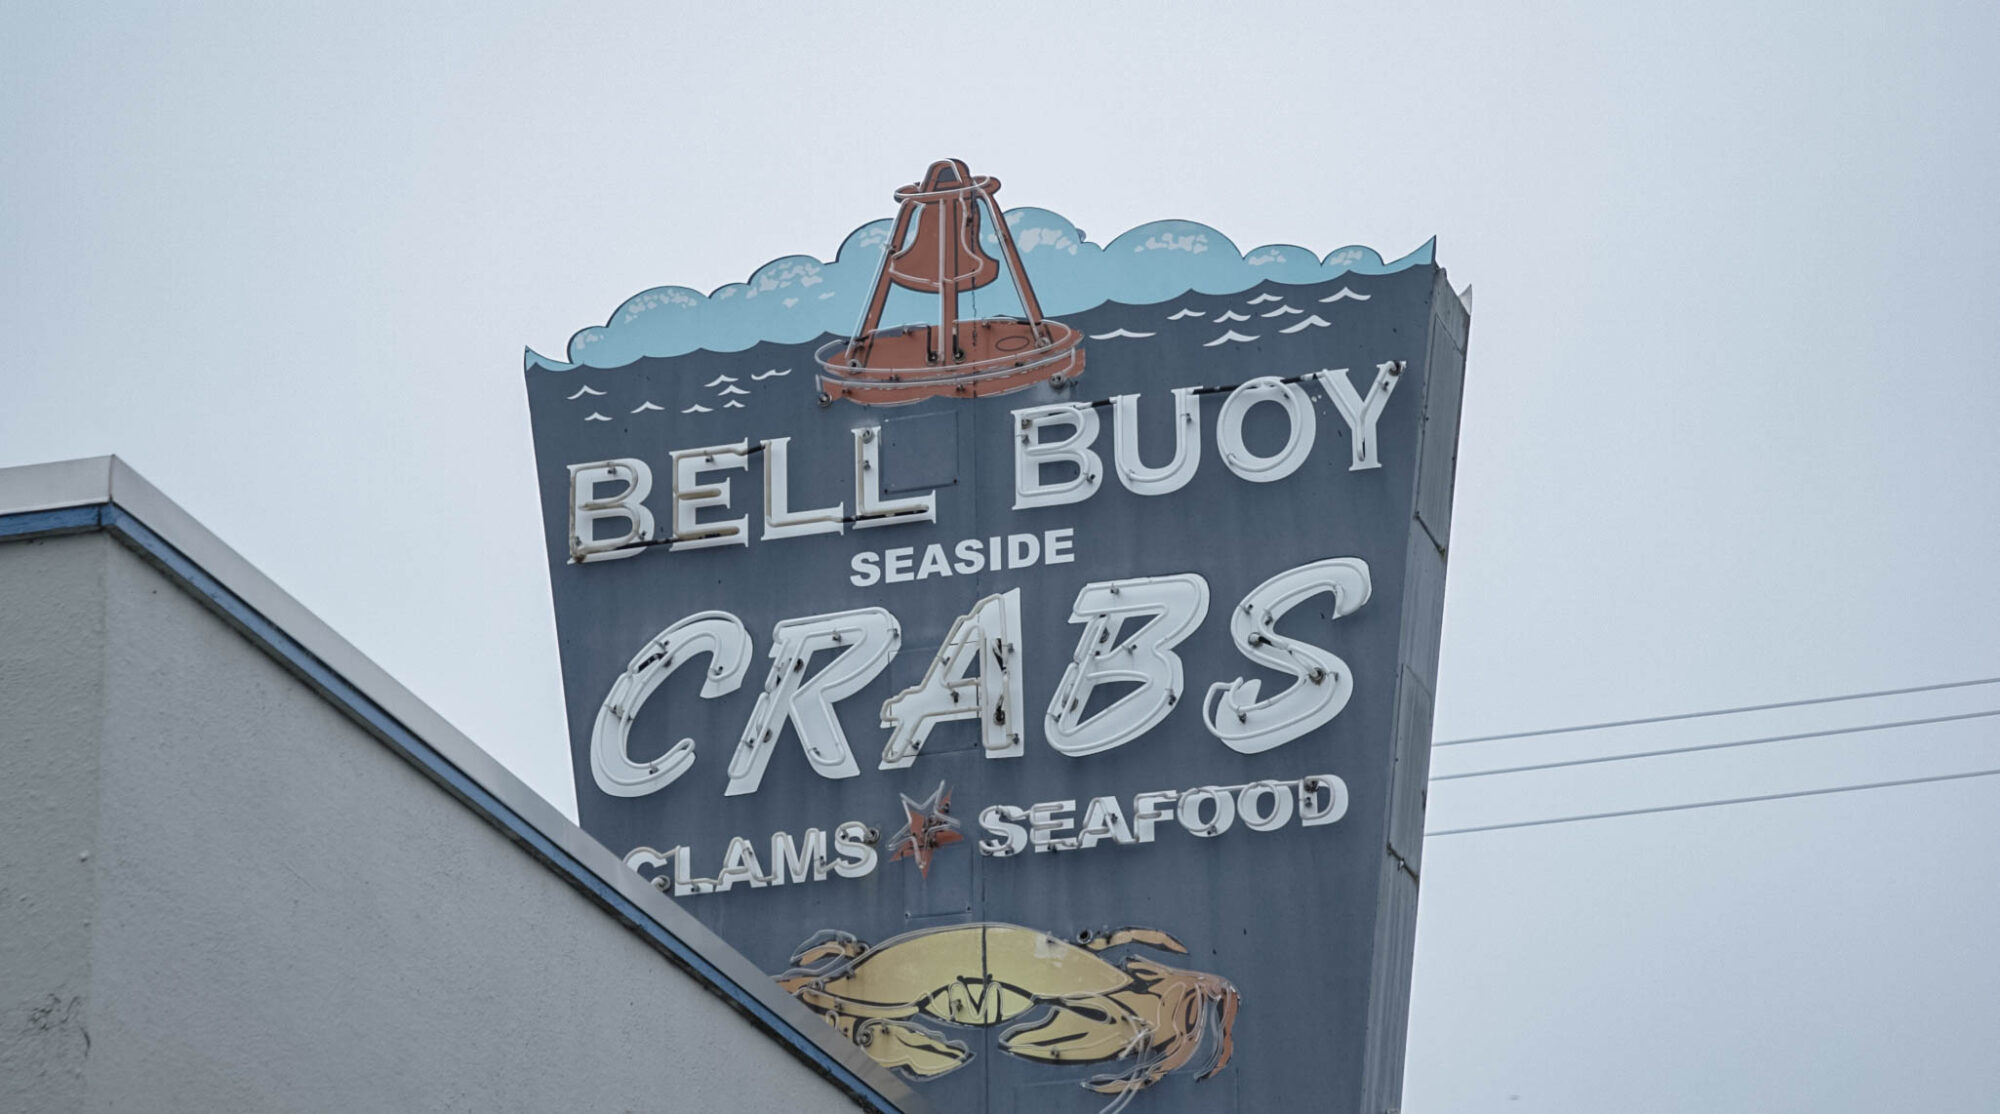 Bell Buoy in Seaside, Oregon